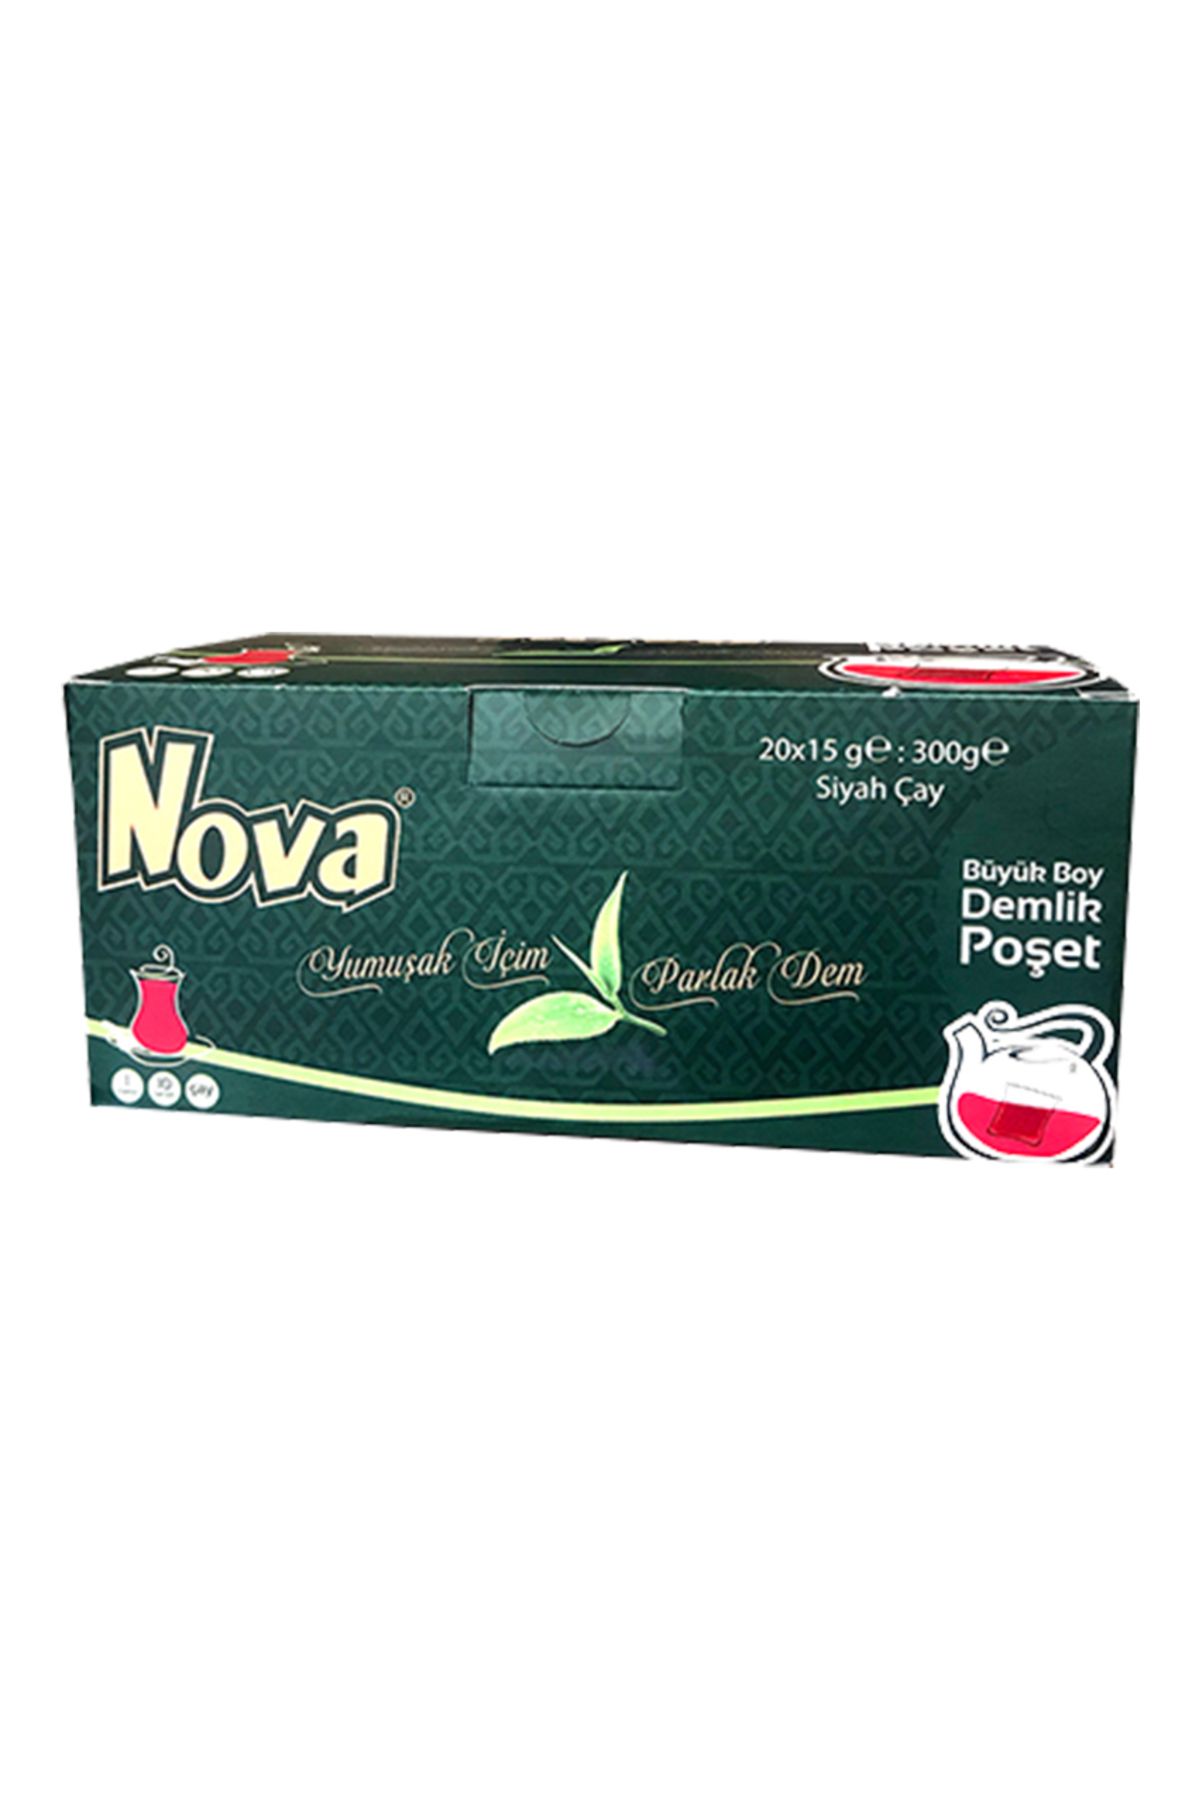 Nova Büyük Boy Demlik Poşet Çay 300 gr (15GR X 20 ADET)